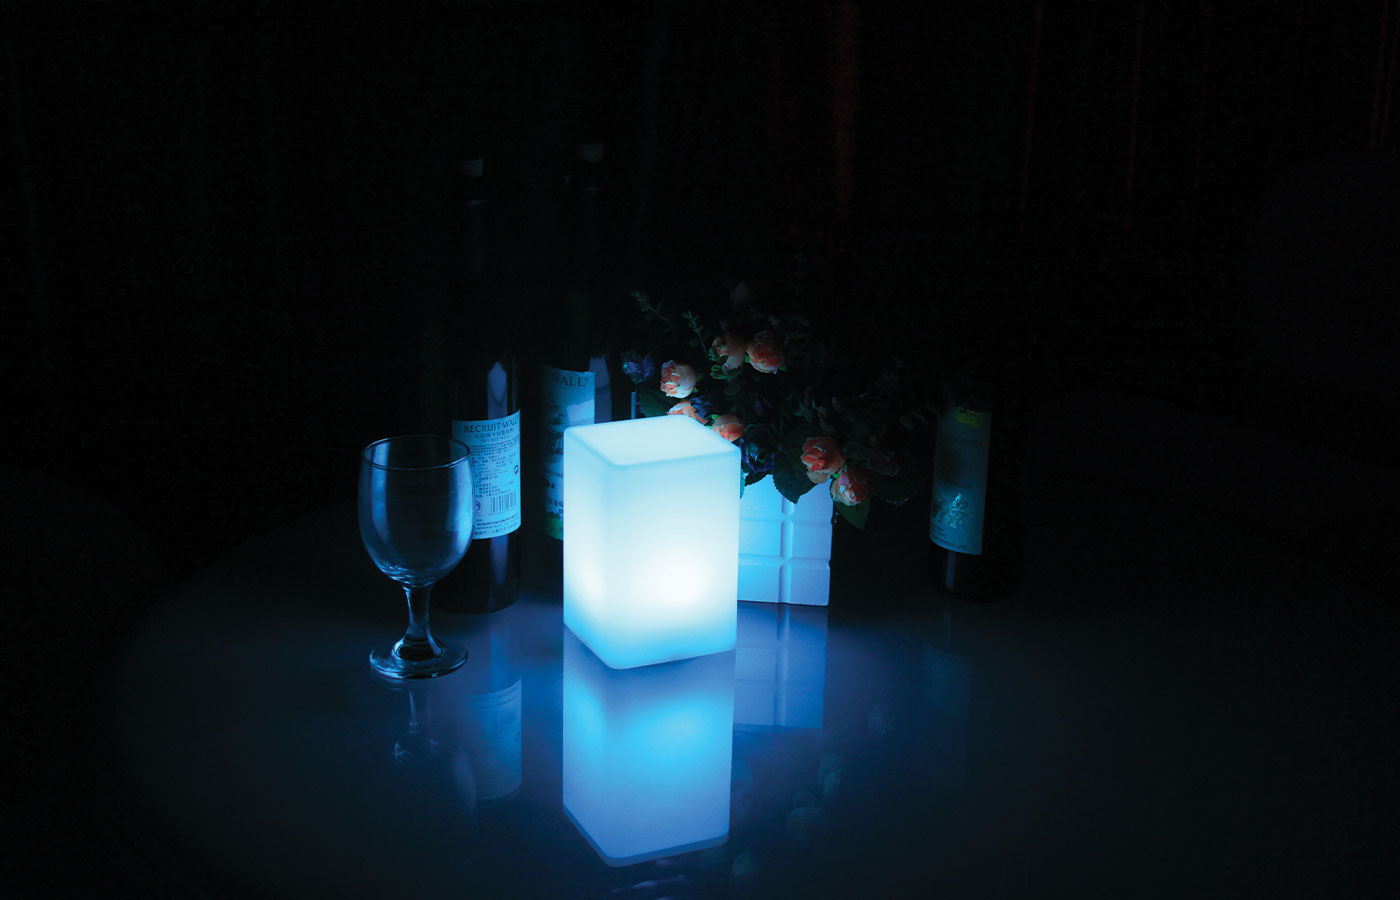 Lampe led cube - Luminaria. Découvrez notre lampe led cube Luminaria. Cette lampe d’extérieure dispose de 16 couleurs, elle trouvera sa place aussi bien dans votre intérieur que dans votre extérieur pour une ambiance cocooning. Elle permet d'embellir votre extérieur